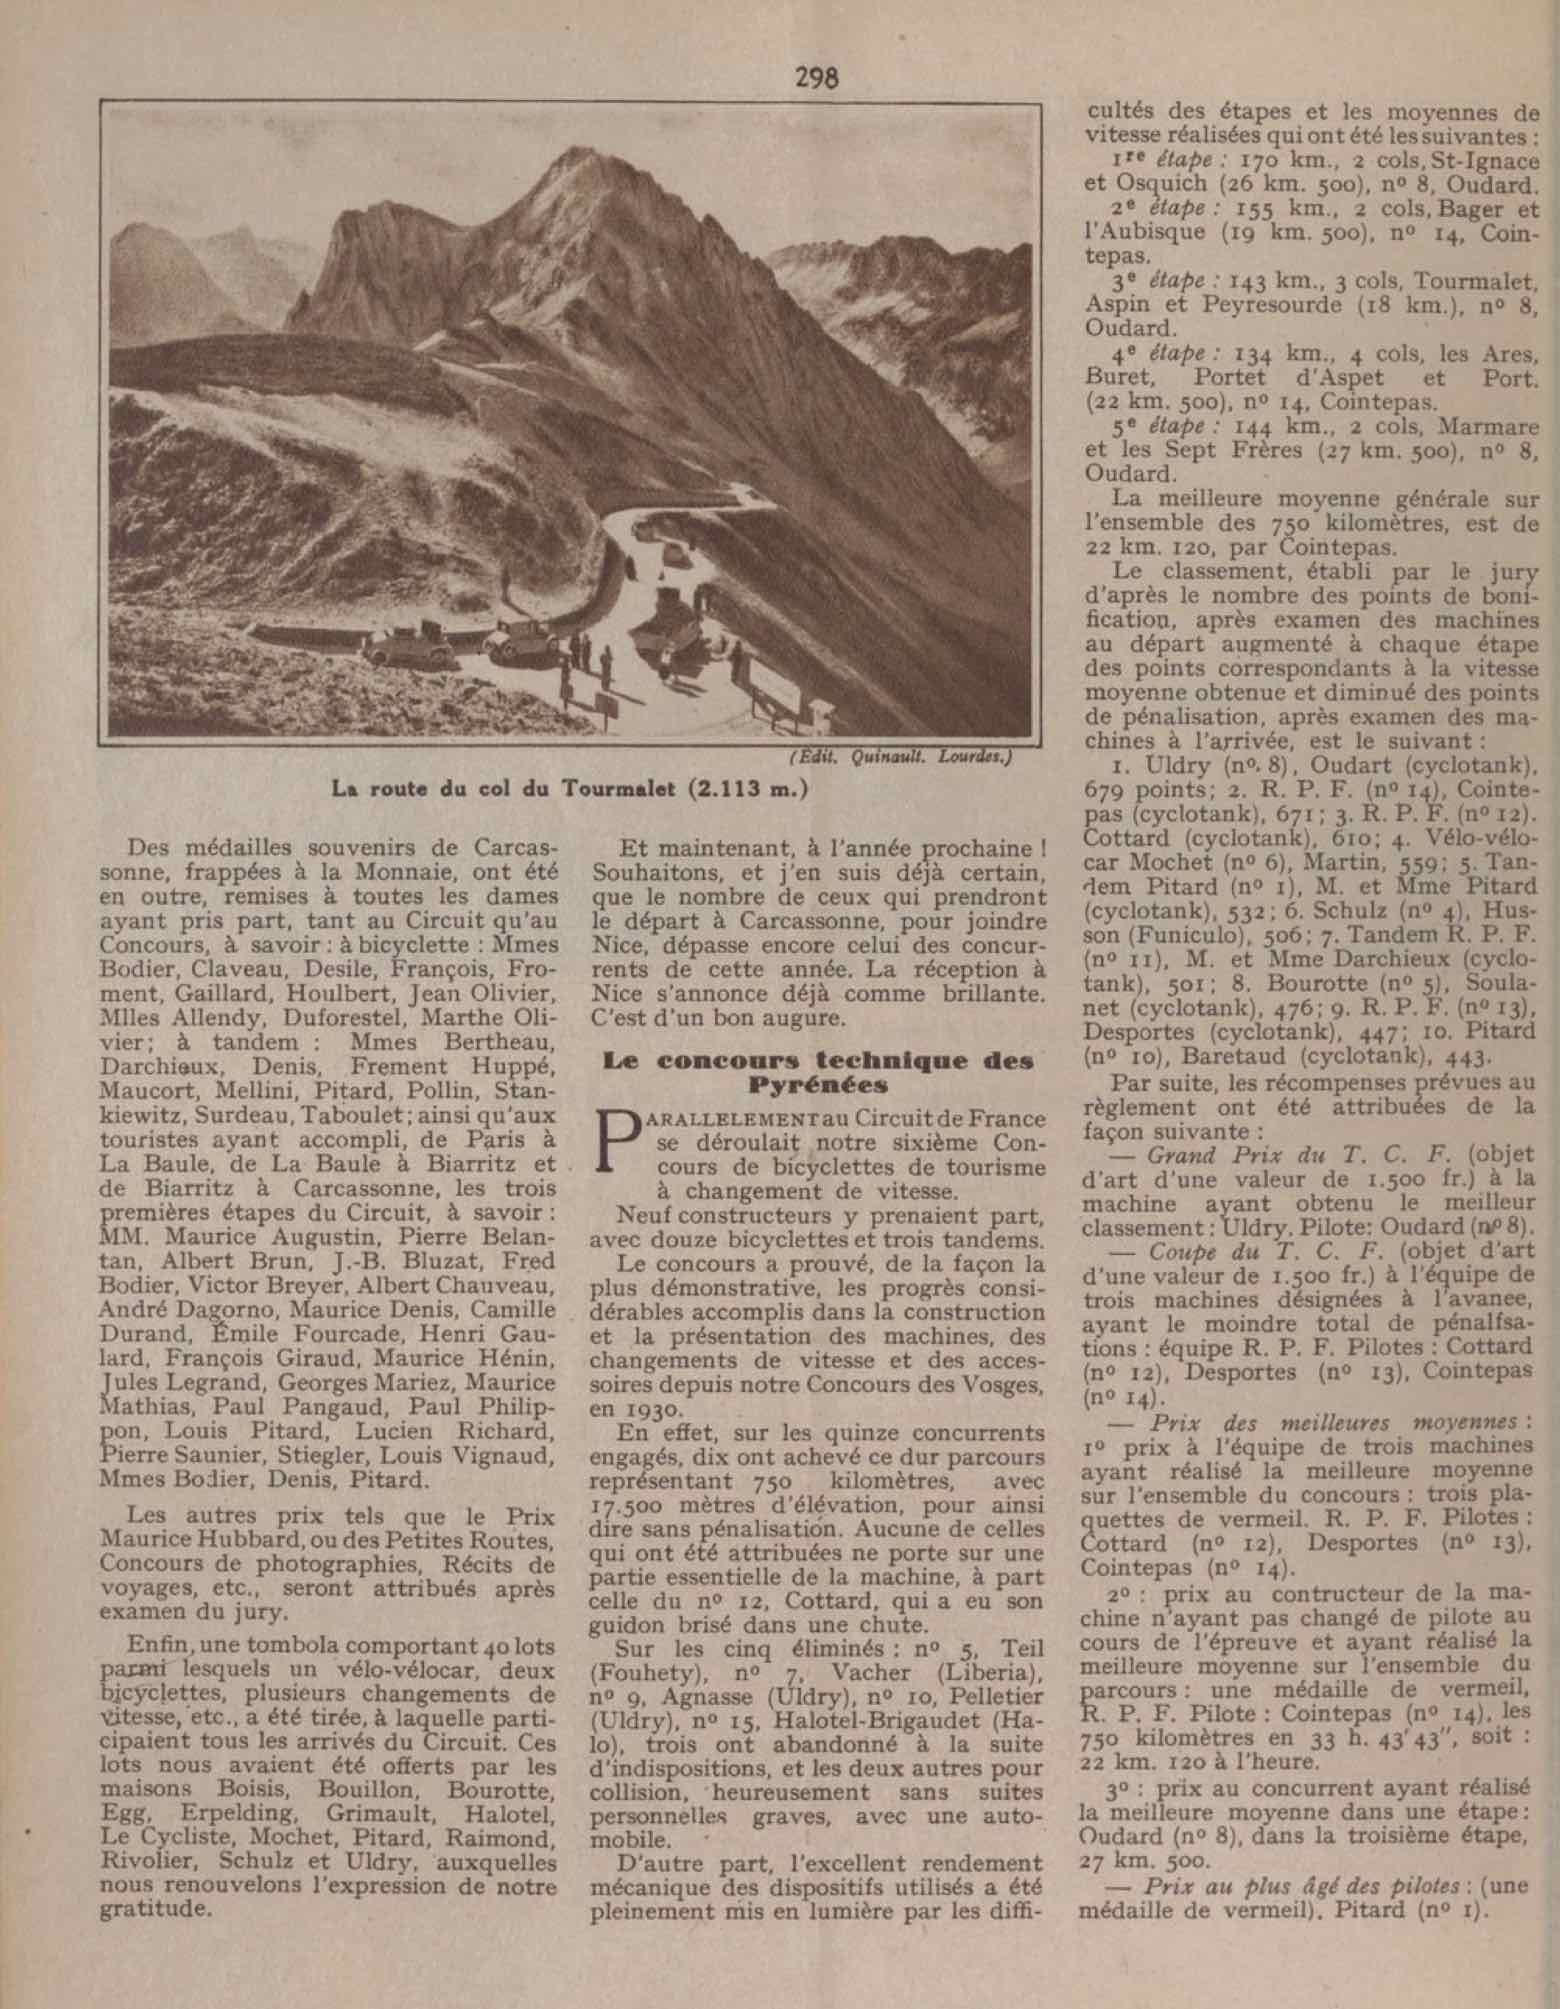 T.C.F. Revue Mensuelle September 1934 - Chronique cyclotouristique scan 2 main image